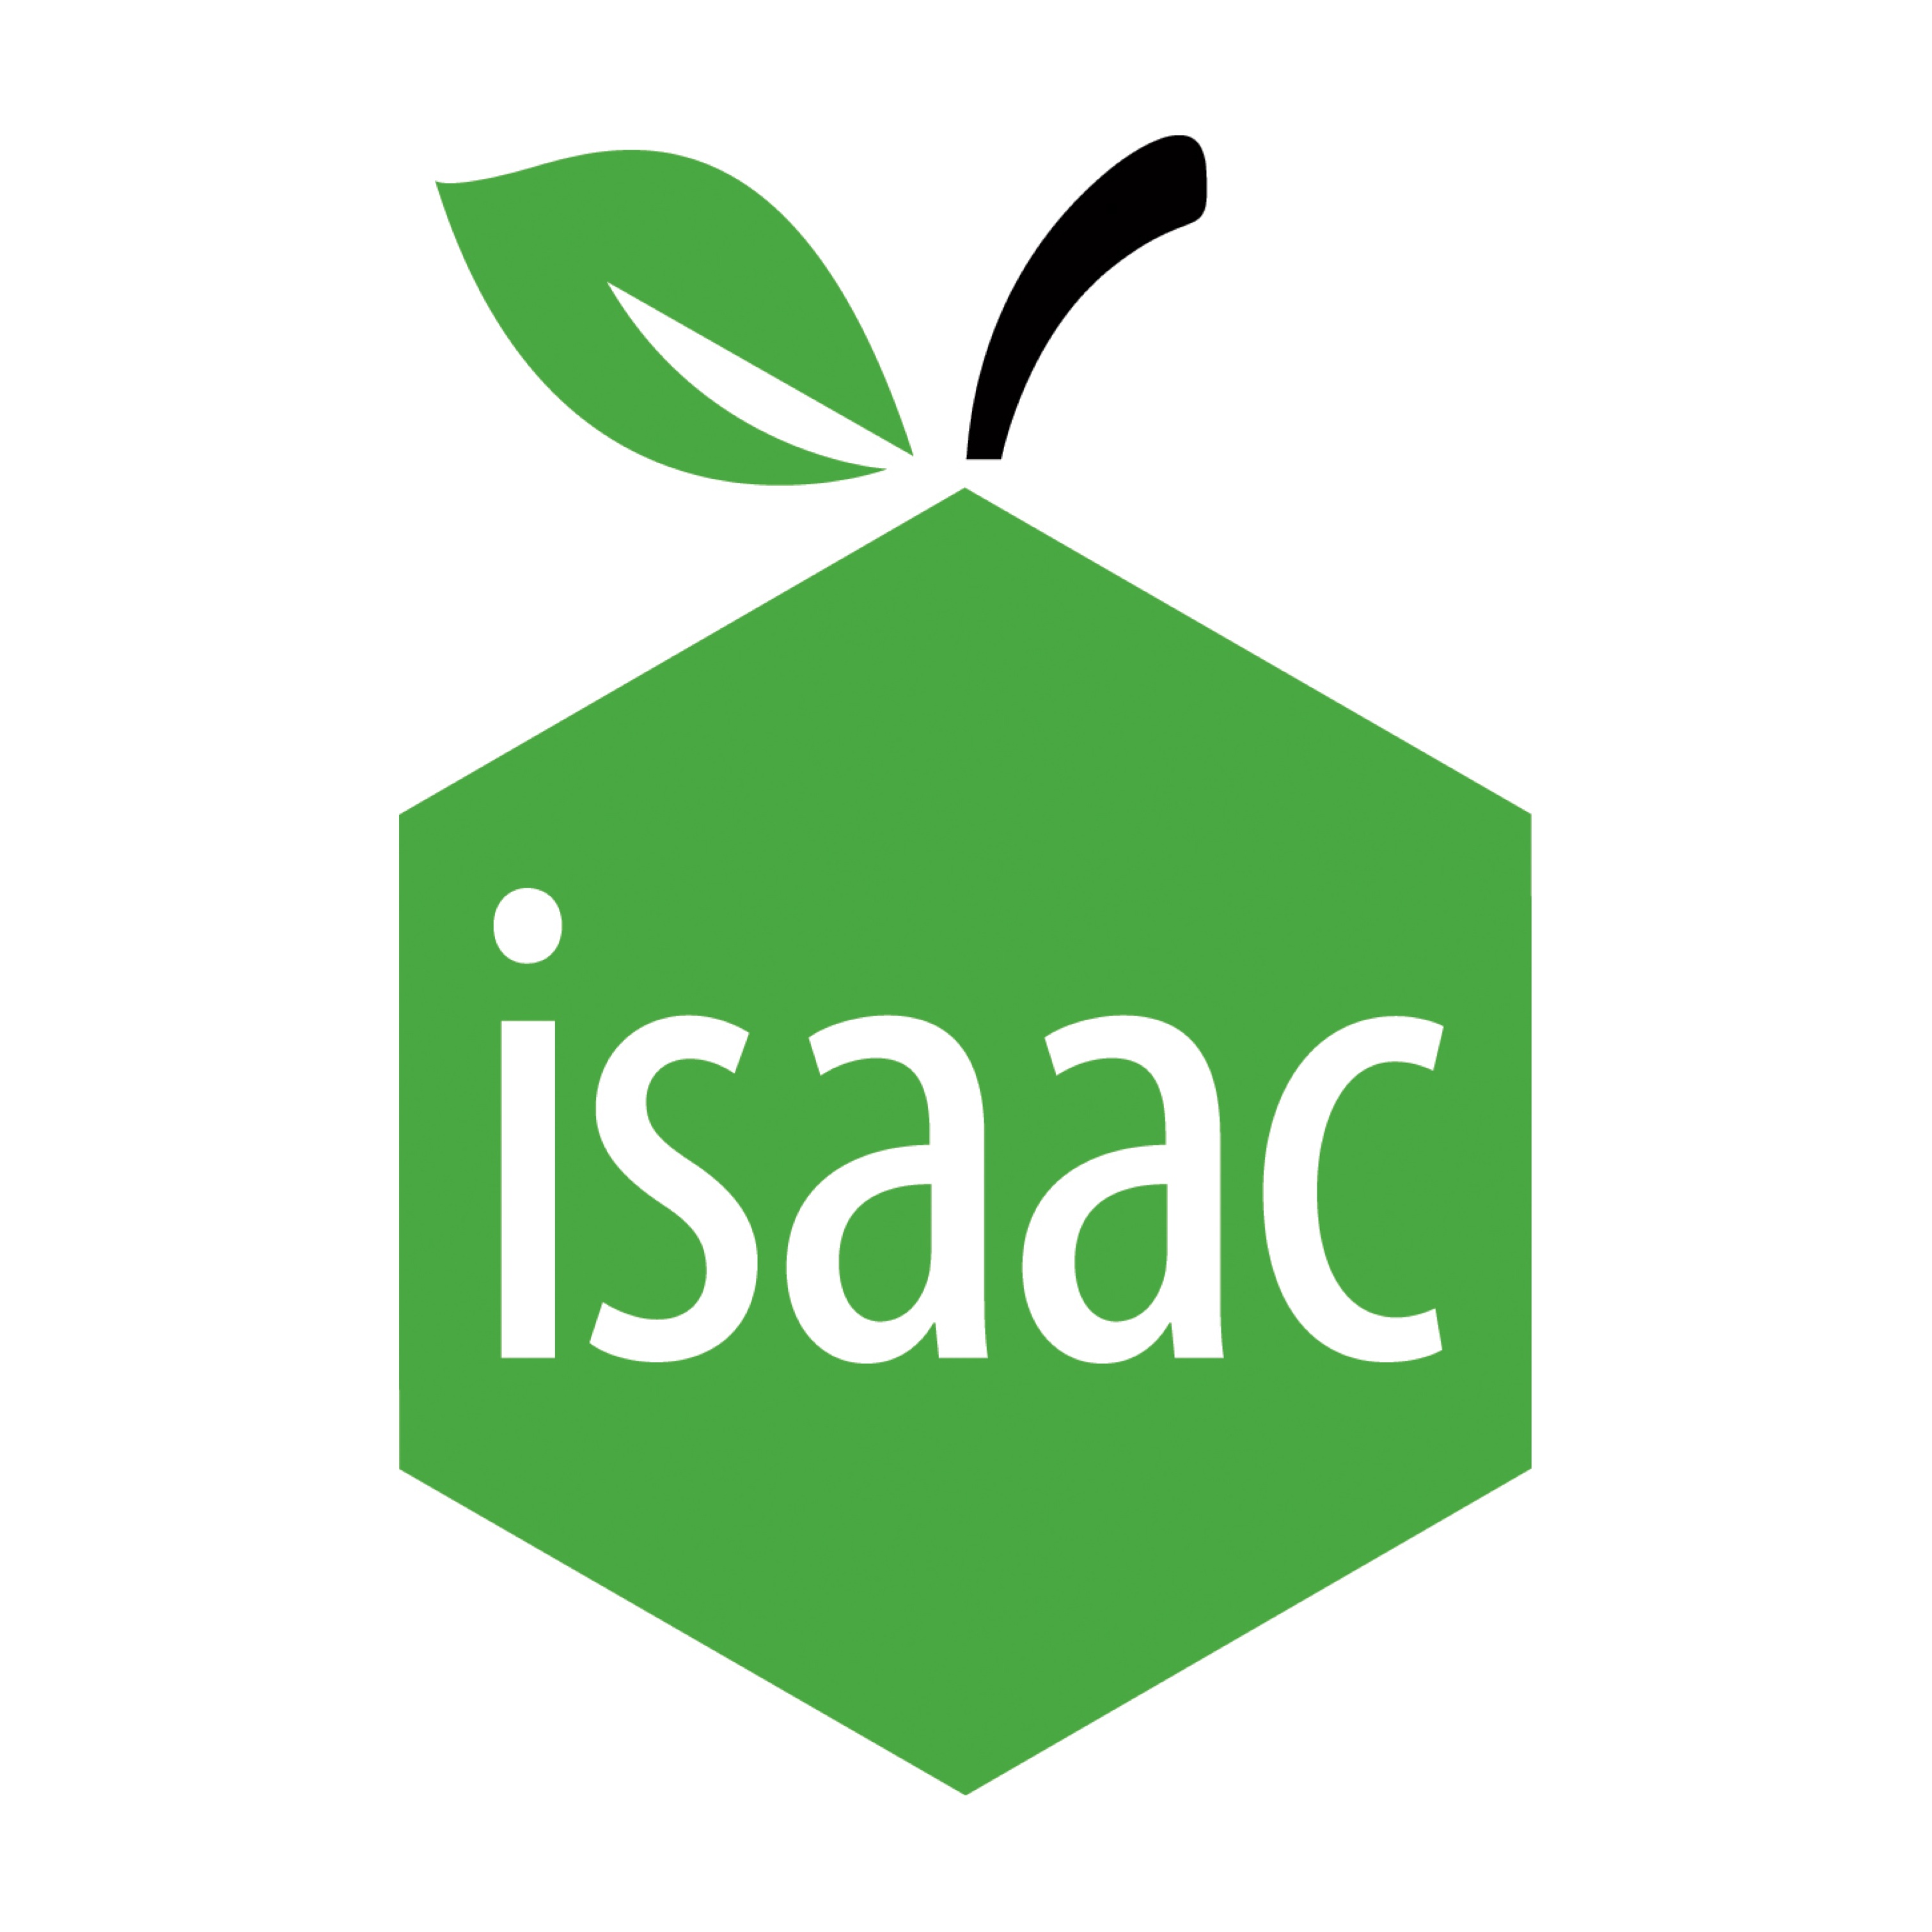 isaac-logo-square.jpg